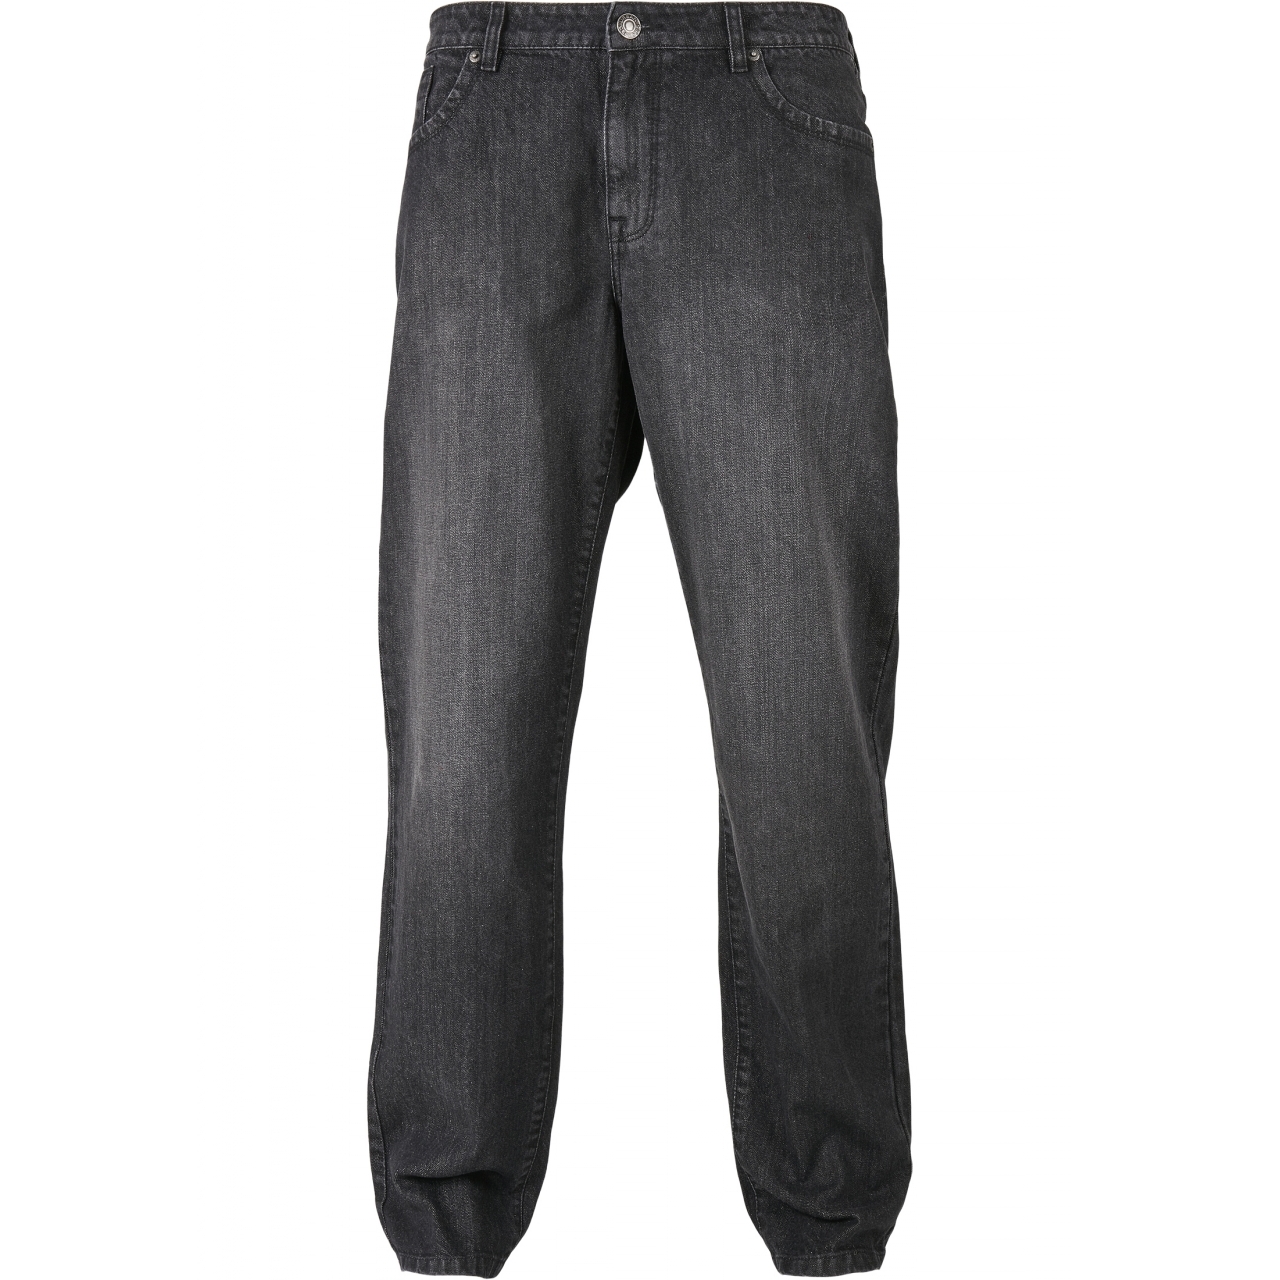 Džíny Urban Classics Loose Fit Jeans - černé, 32/32